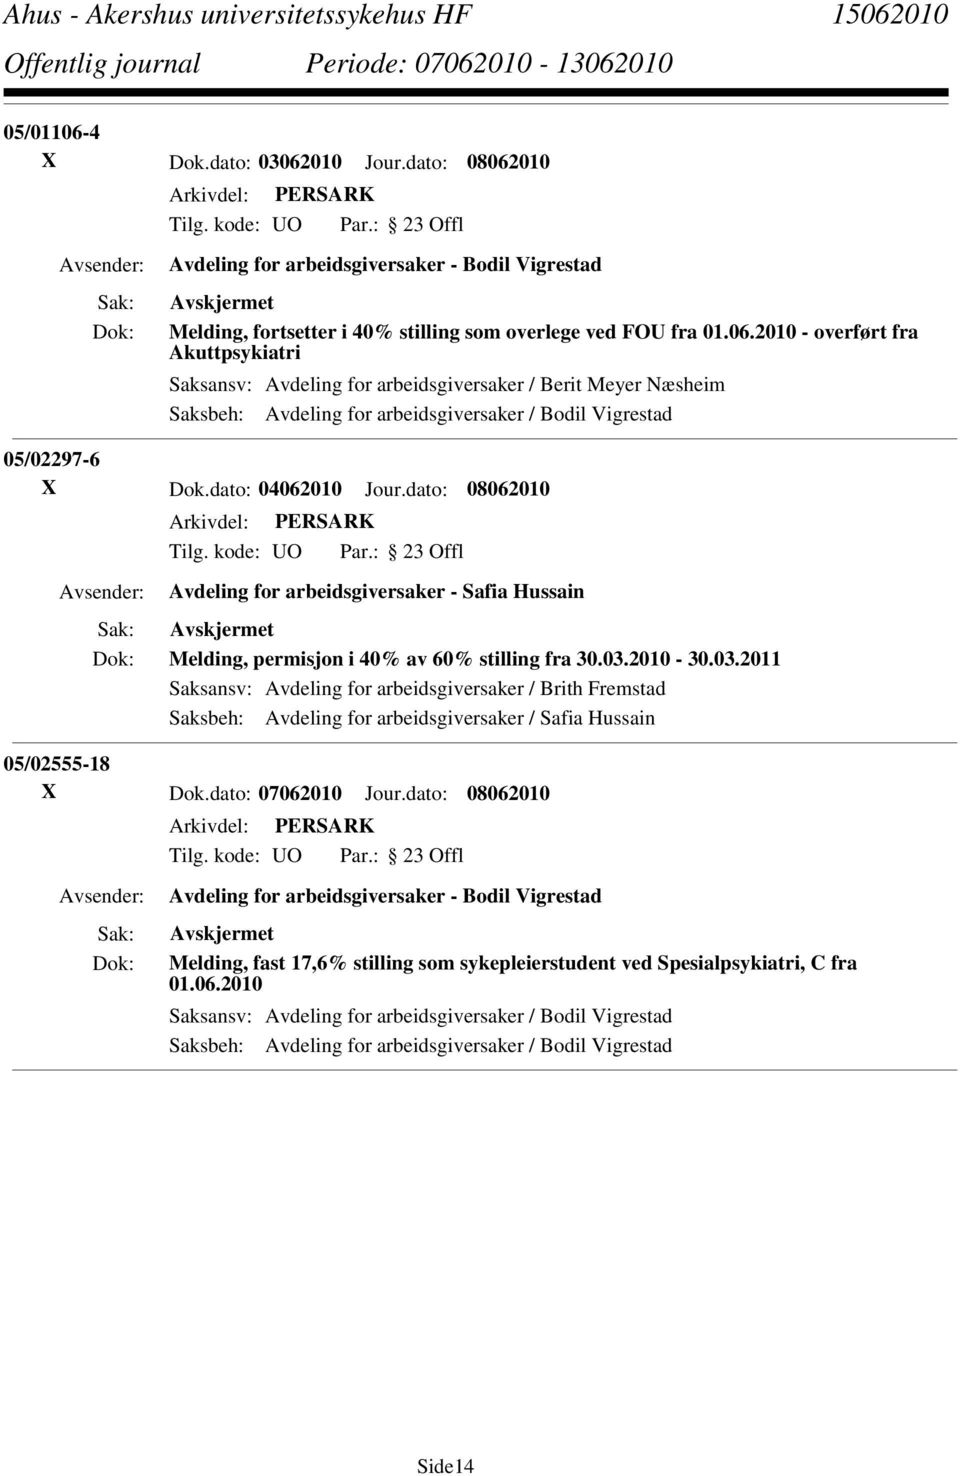 2010-30.03.2011 Saksansv: Avdeling for arbeidsgiversaker / Brith Fremstad Saksbeh: Avdeling for arbeidsgiversaker / Safia Hussain 05/02555-18 X Dok.dato: 07062010 Jour.